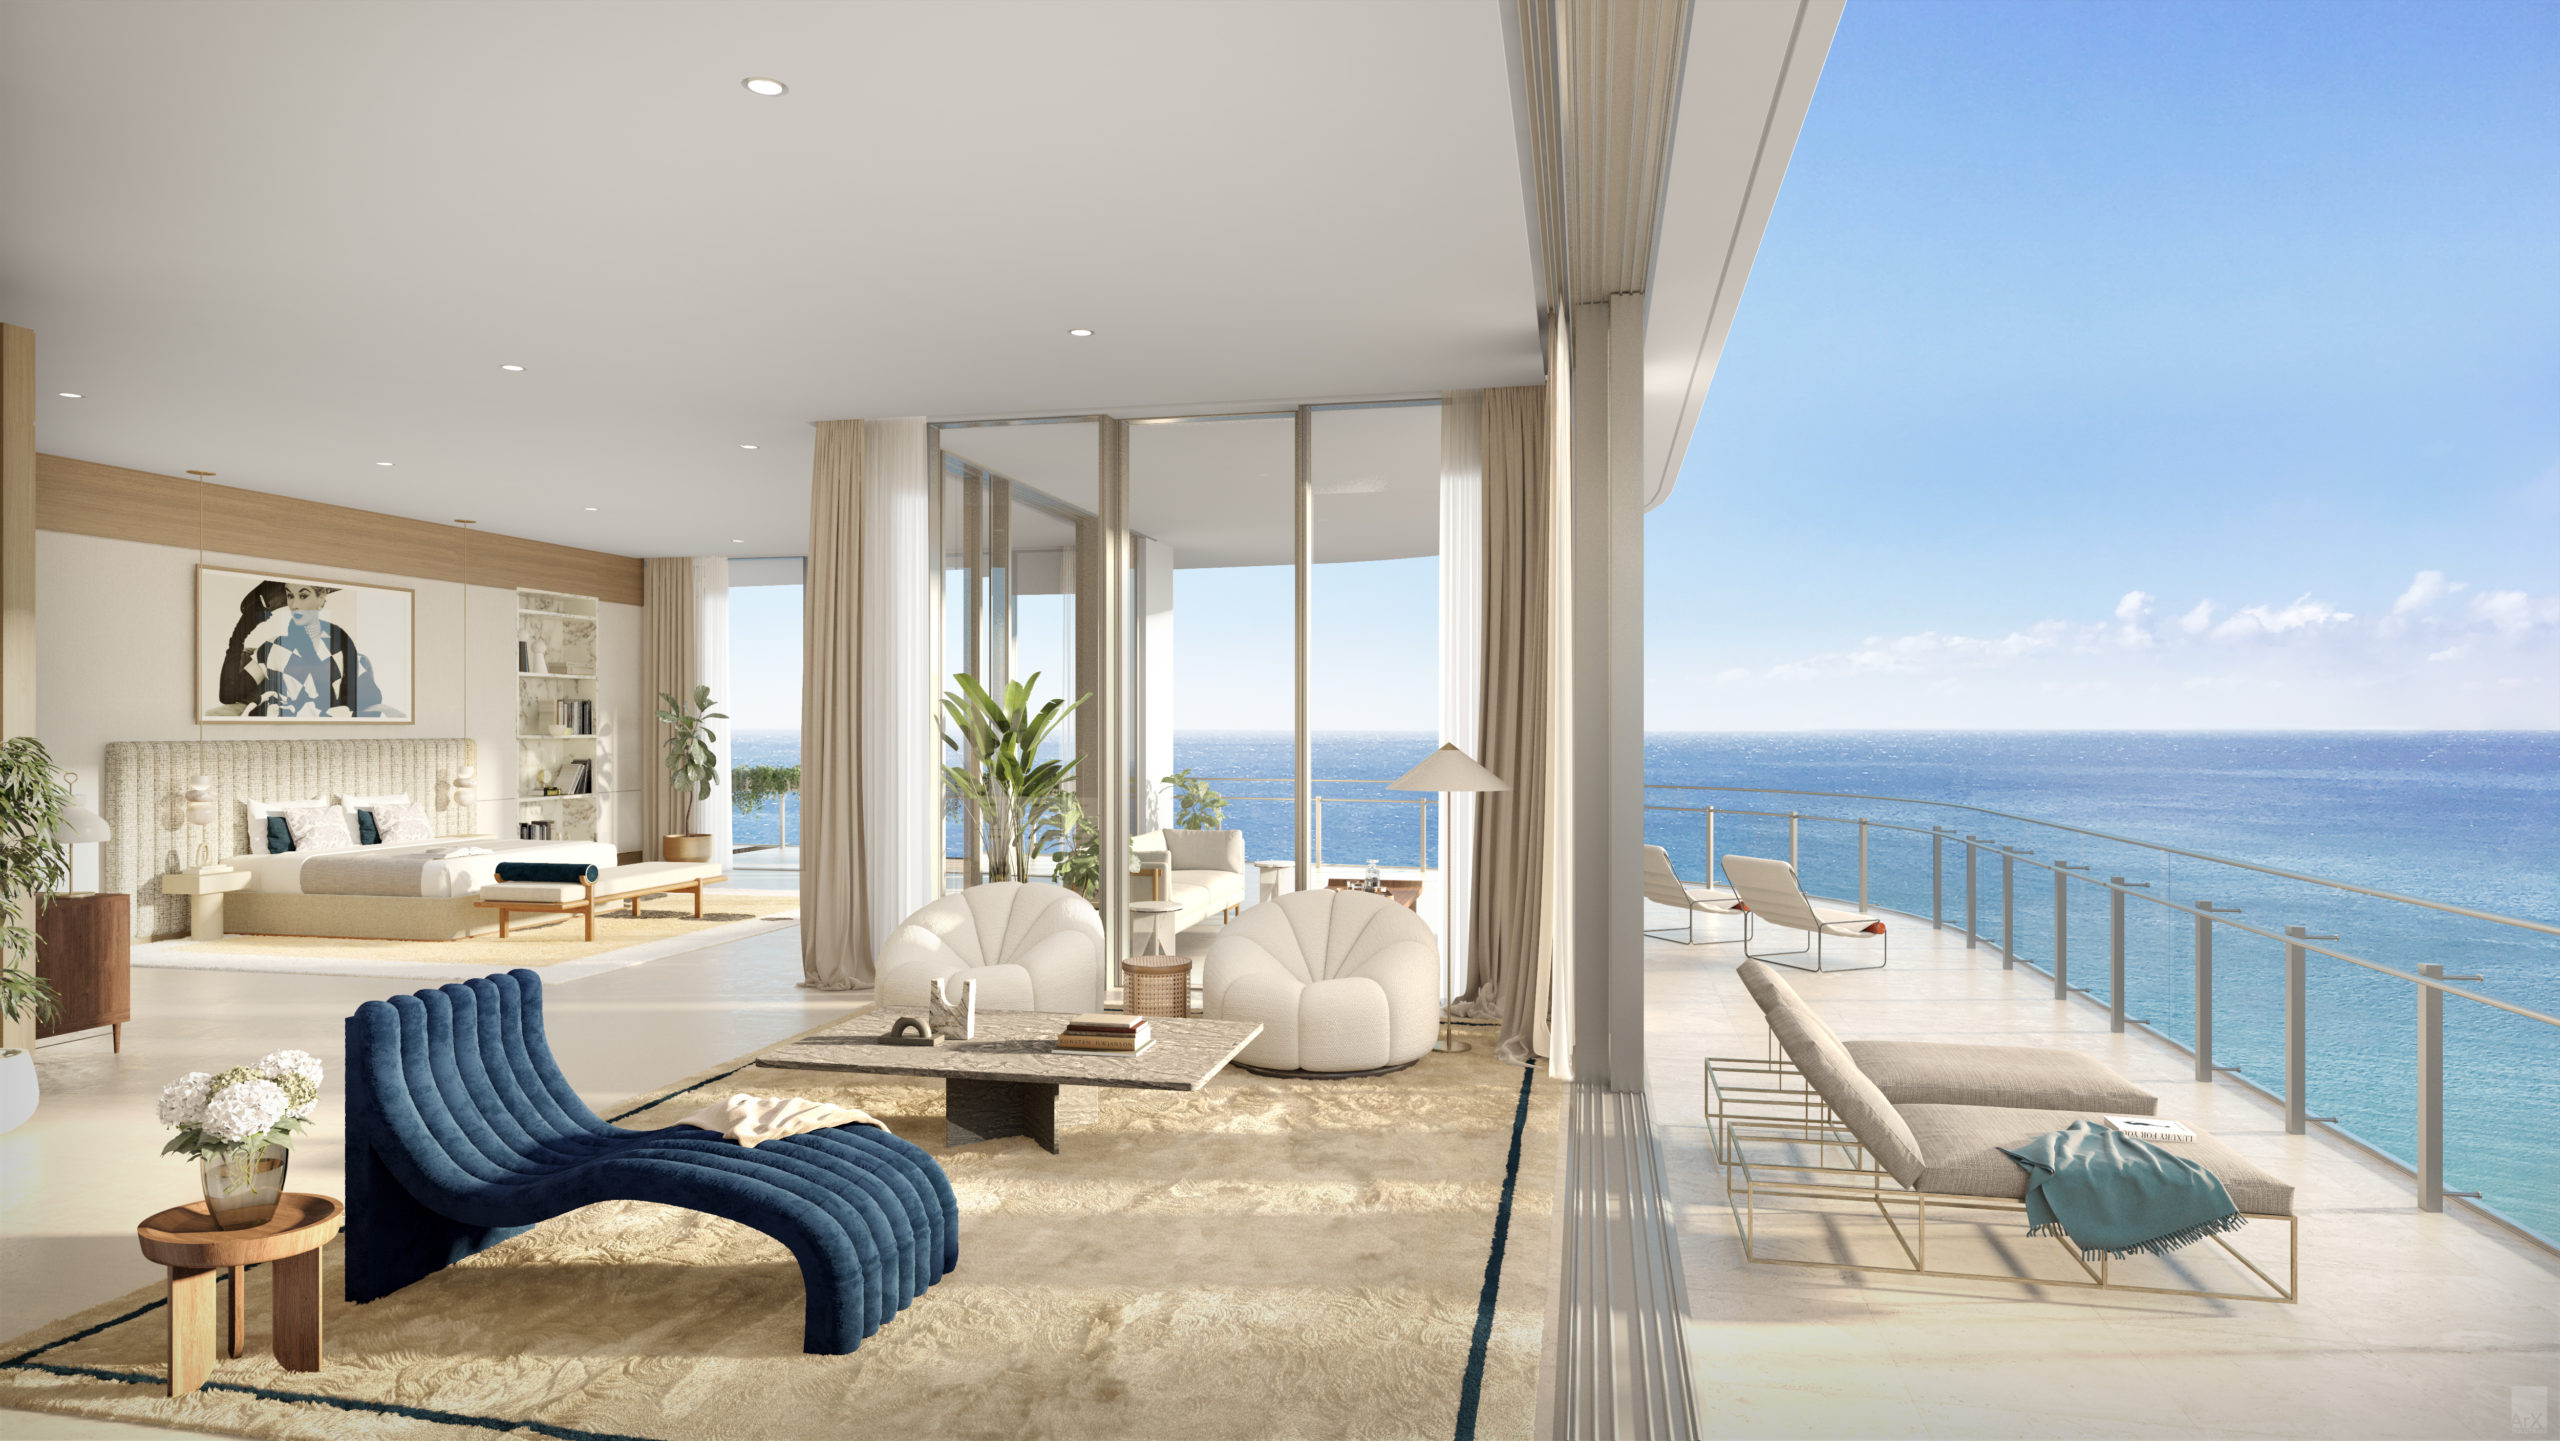 Thiết kế căn Penthouse đẹp nhất năm 2022 - Mẫu 1